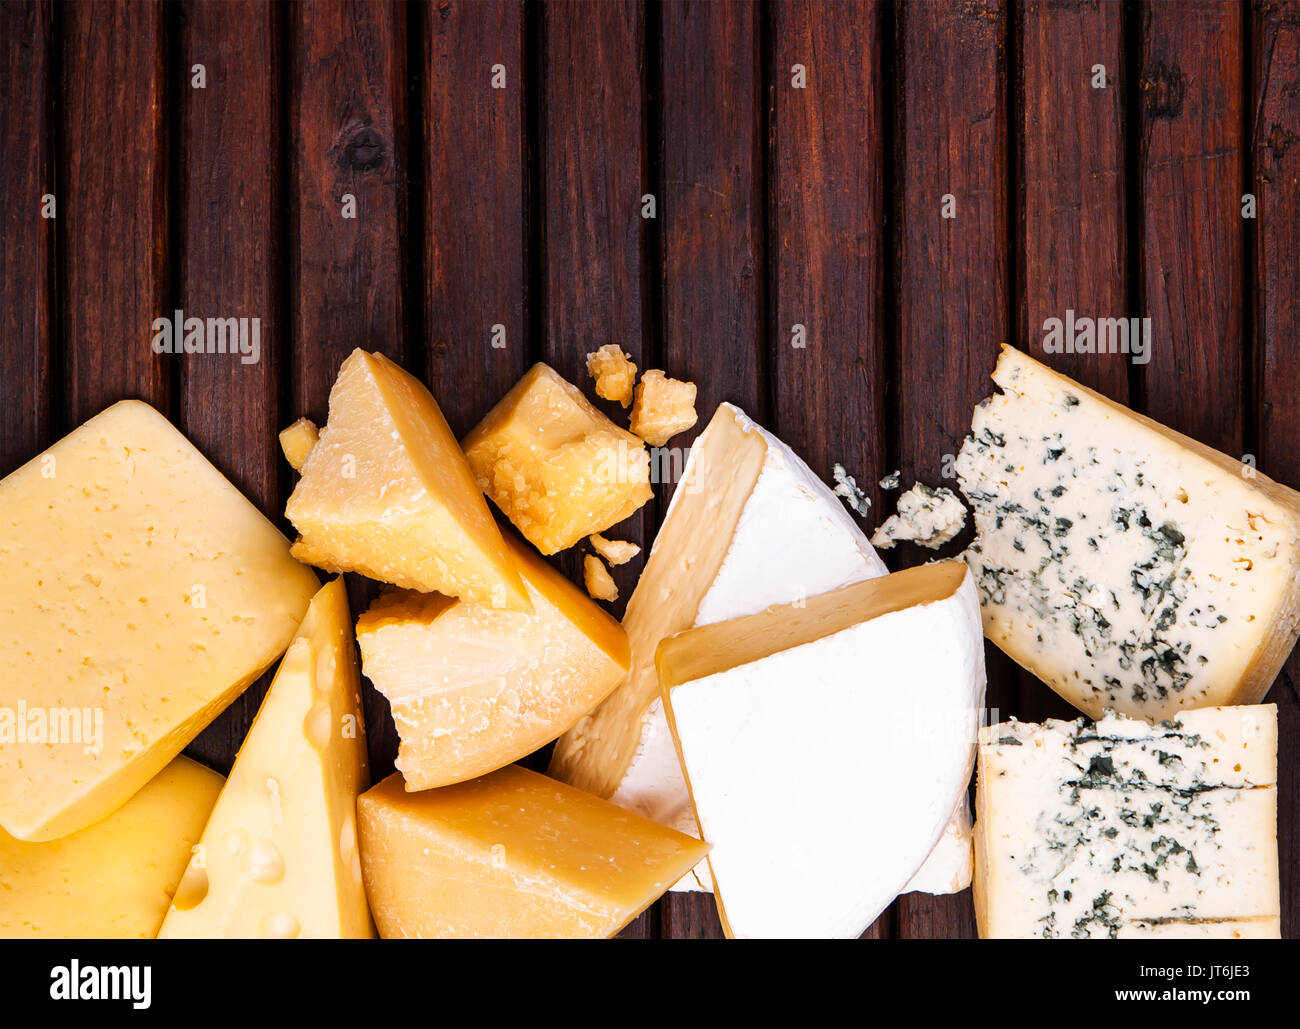 Vari tipi di formaggio su tavola in legno rustico, vista dall'alto Foto Stock